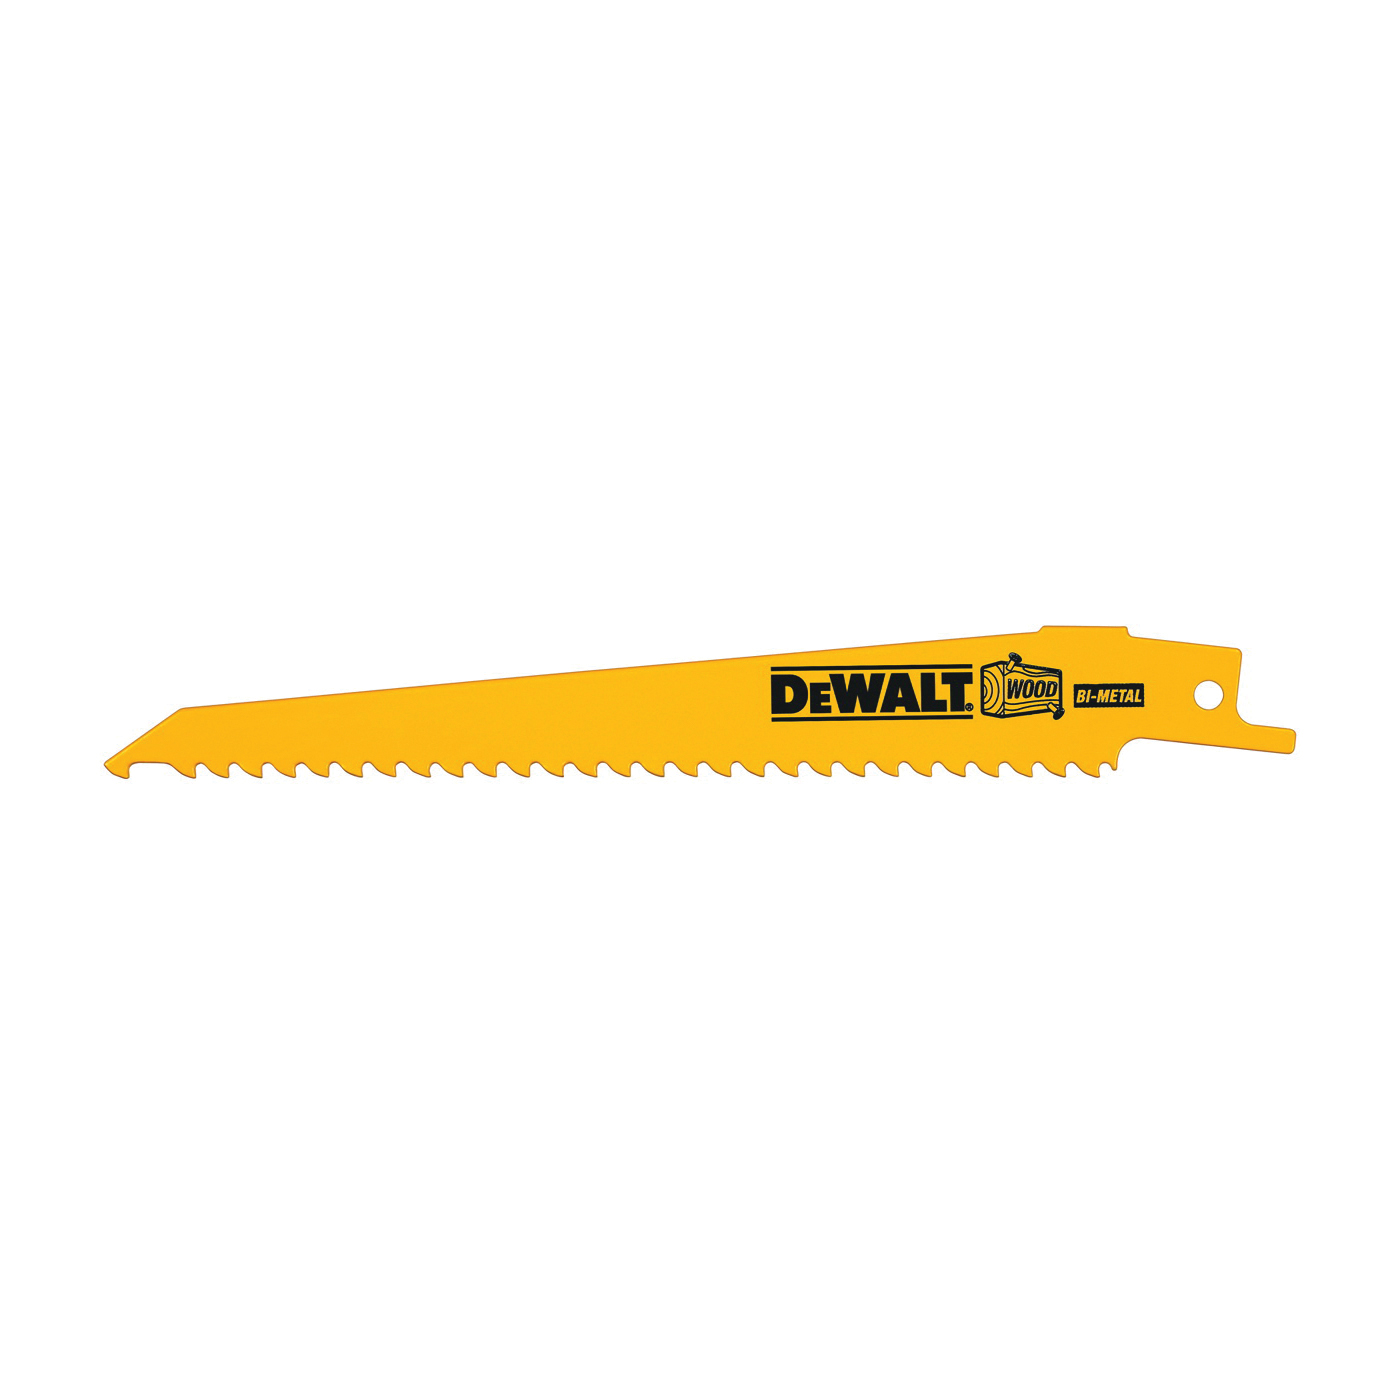 DeWALT DW4801 Reciprocating Saw Blade, 3/4 in W, 6 in L, 3 TPI